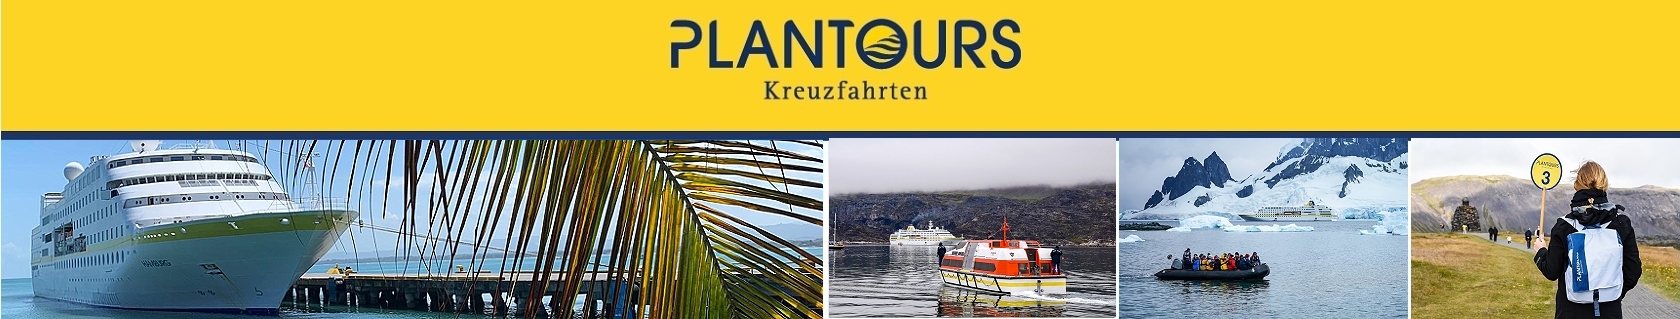 Titelbild_Landausflüge_Banner-plantours-keuzfahrten